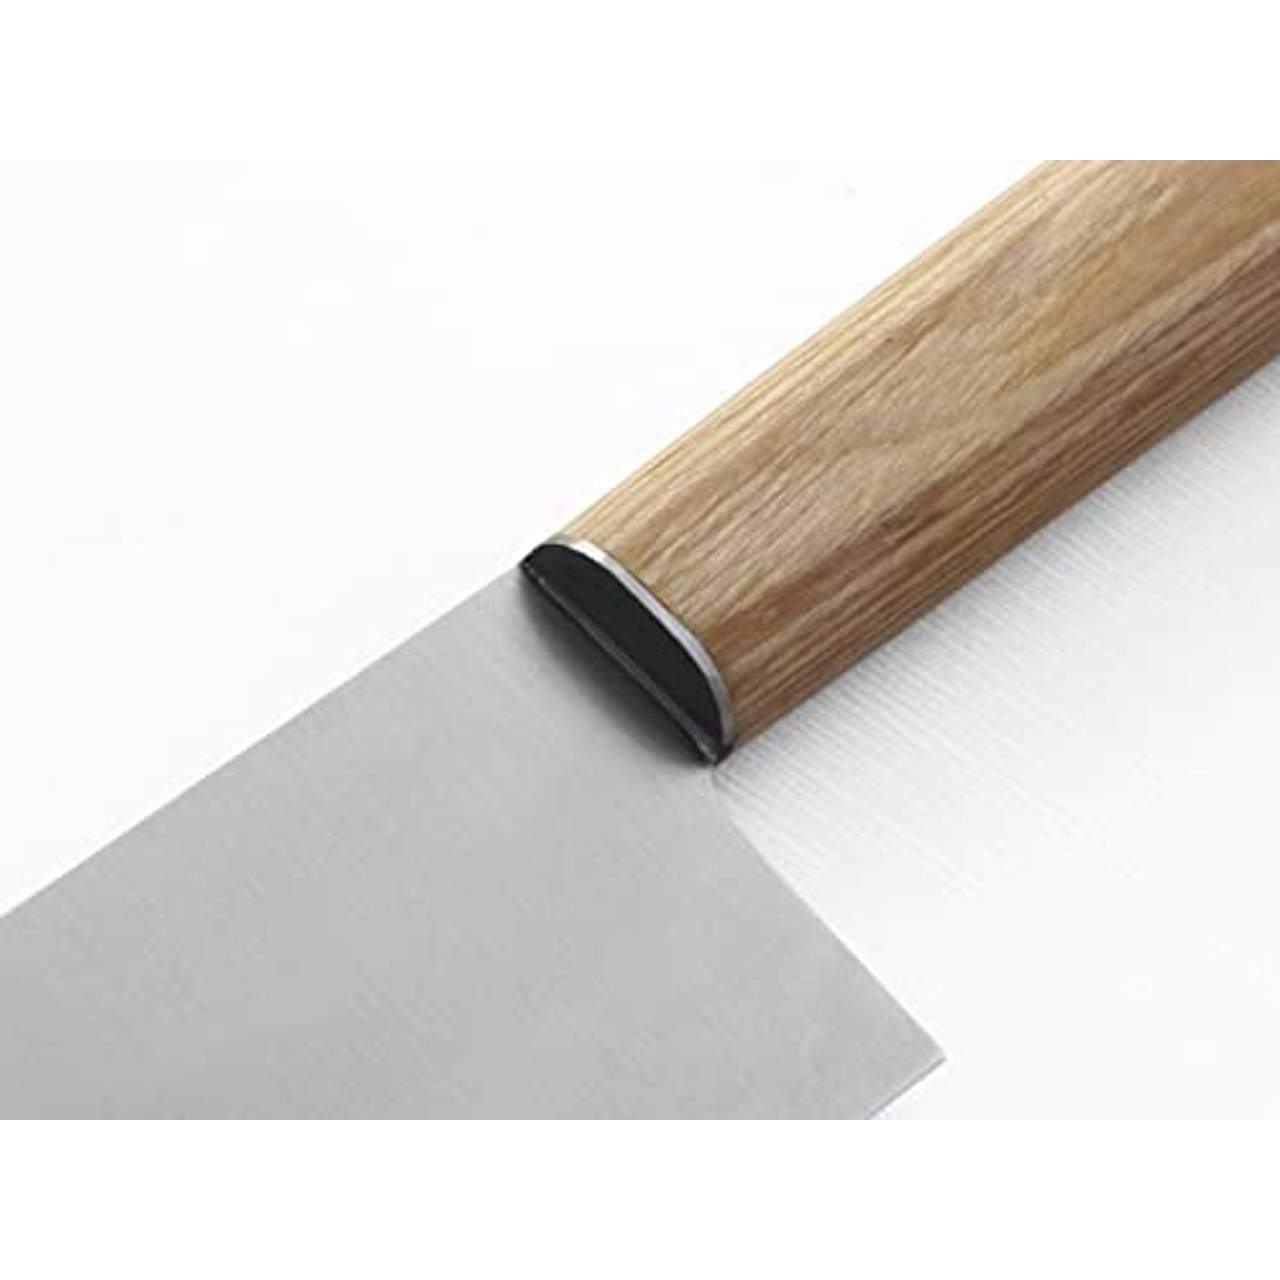 SHIZU HAMONO Japanisches Messer Handgeschmiedet